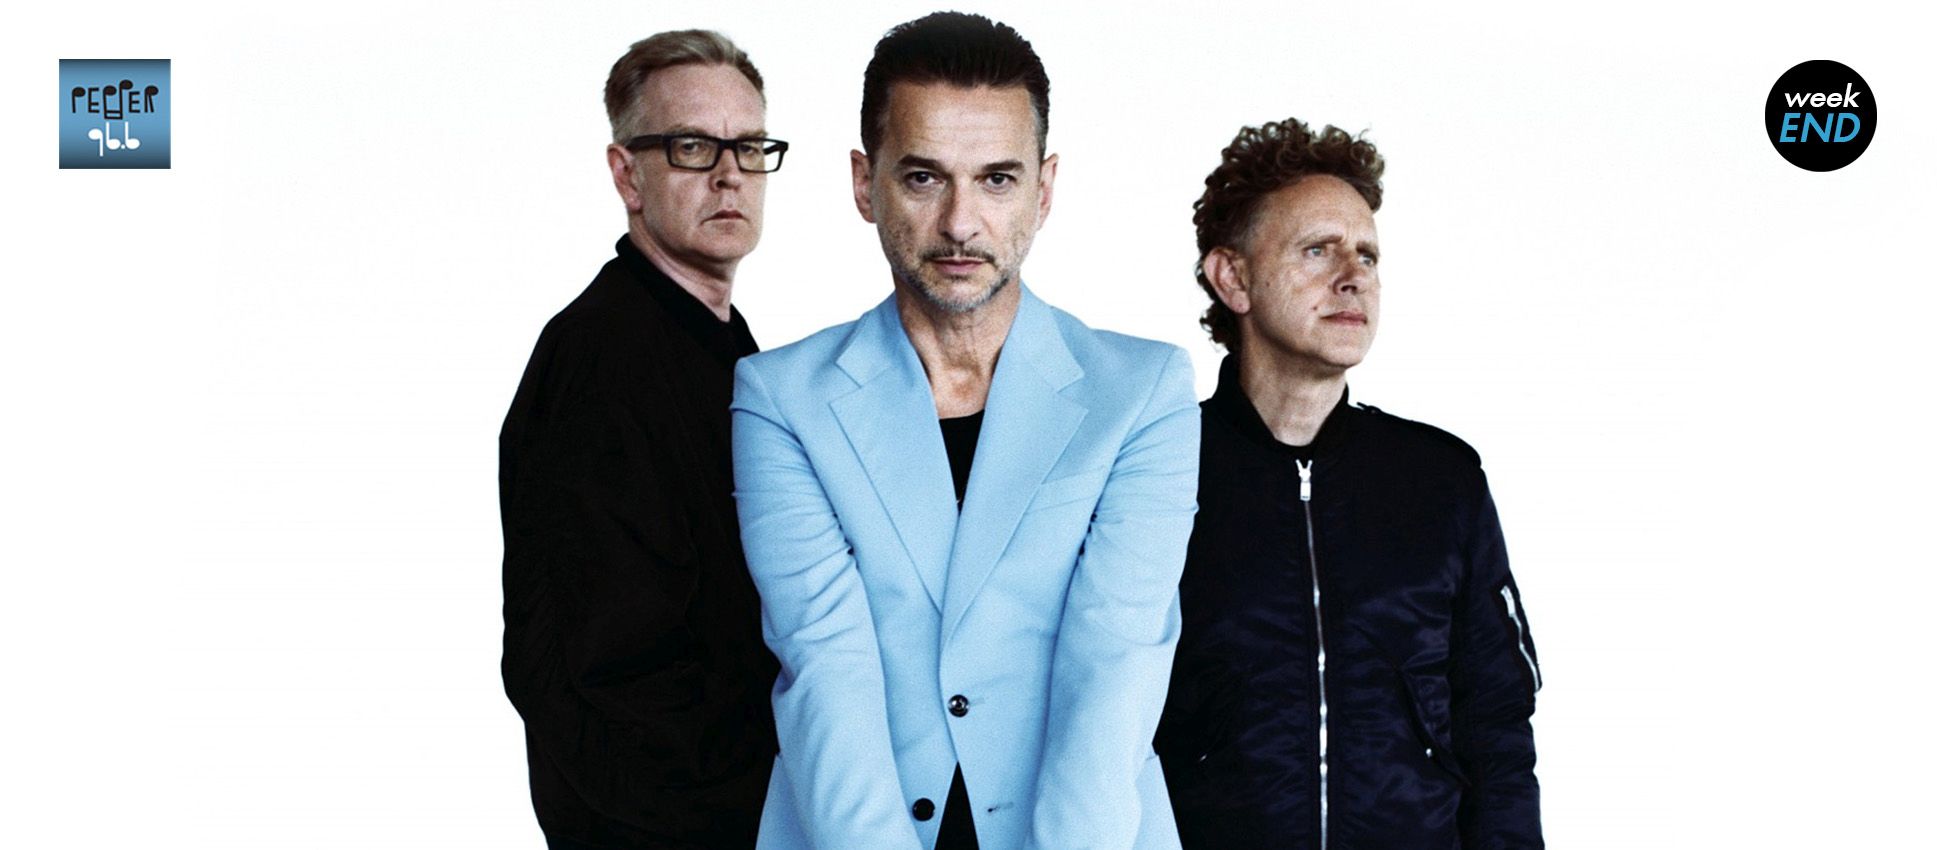 Σαββατοκύριακο στον Pepper 96.6 με τους Depeche Mode